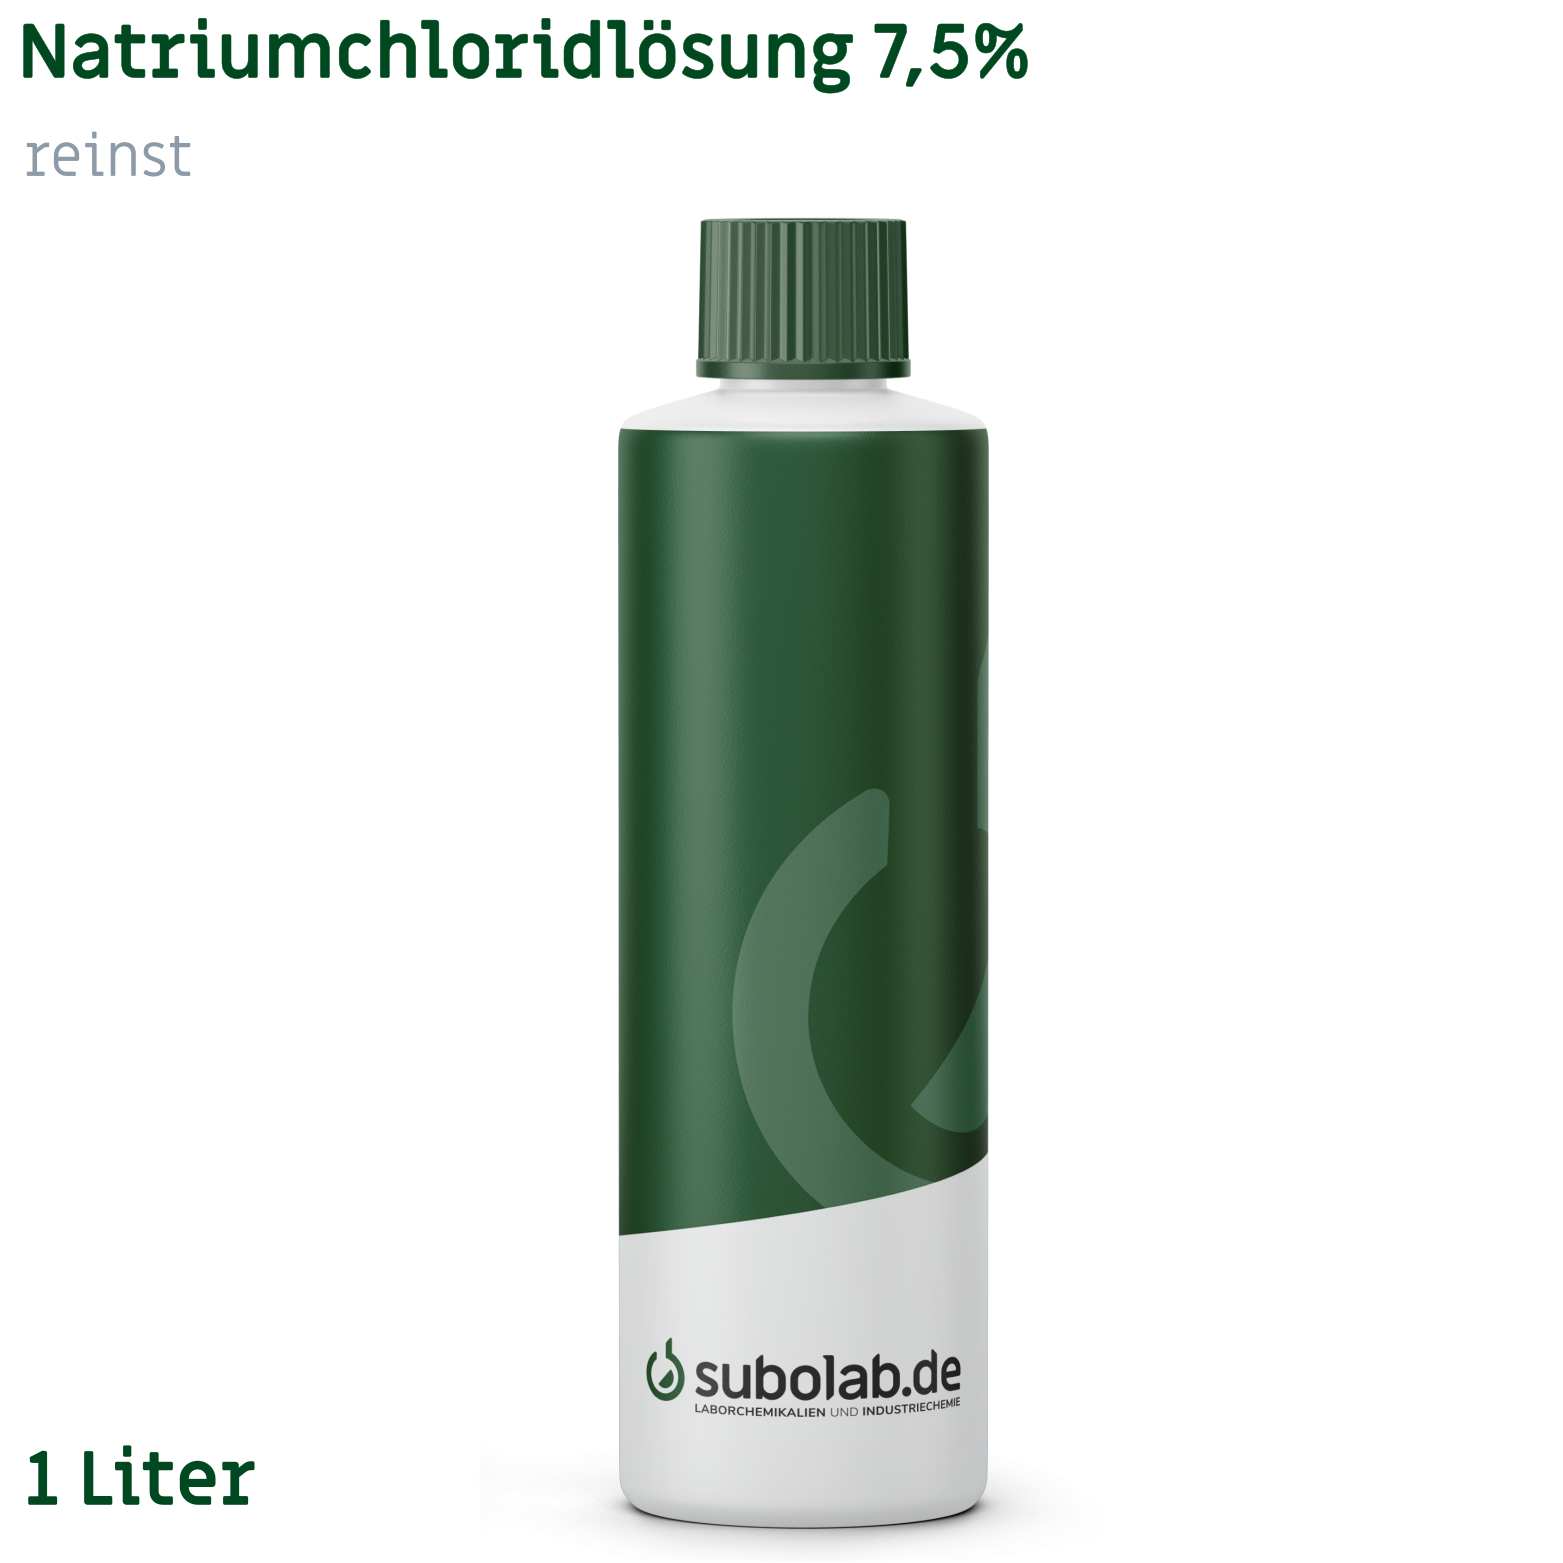 Bild von Natriumchloridlösung 7,5% reinst (1 Liter)